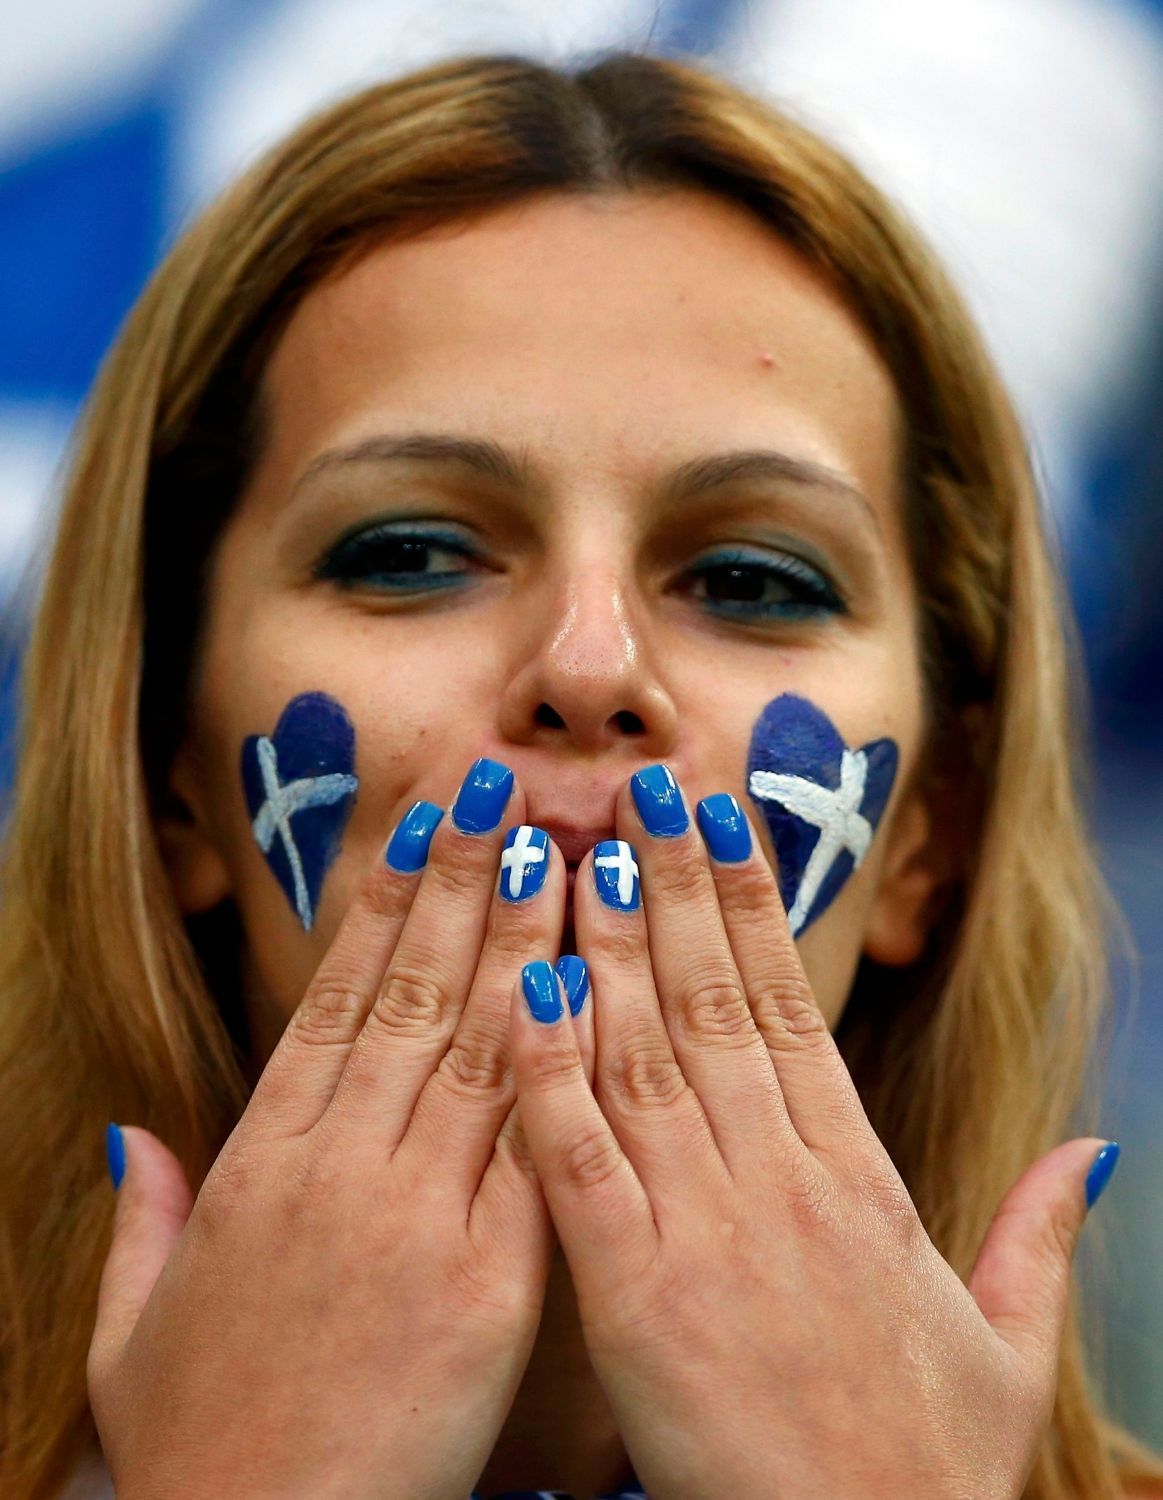 Fanoušci před čtvrtfinálovým utkáním Německo - Řecko na Euru 2012